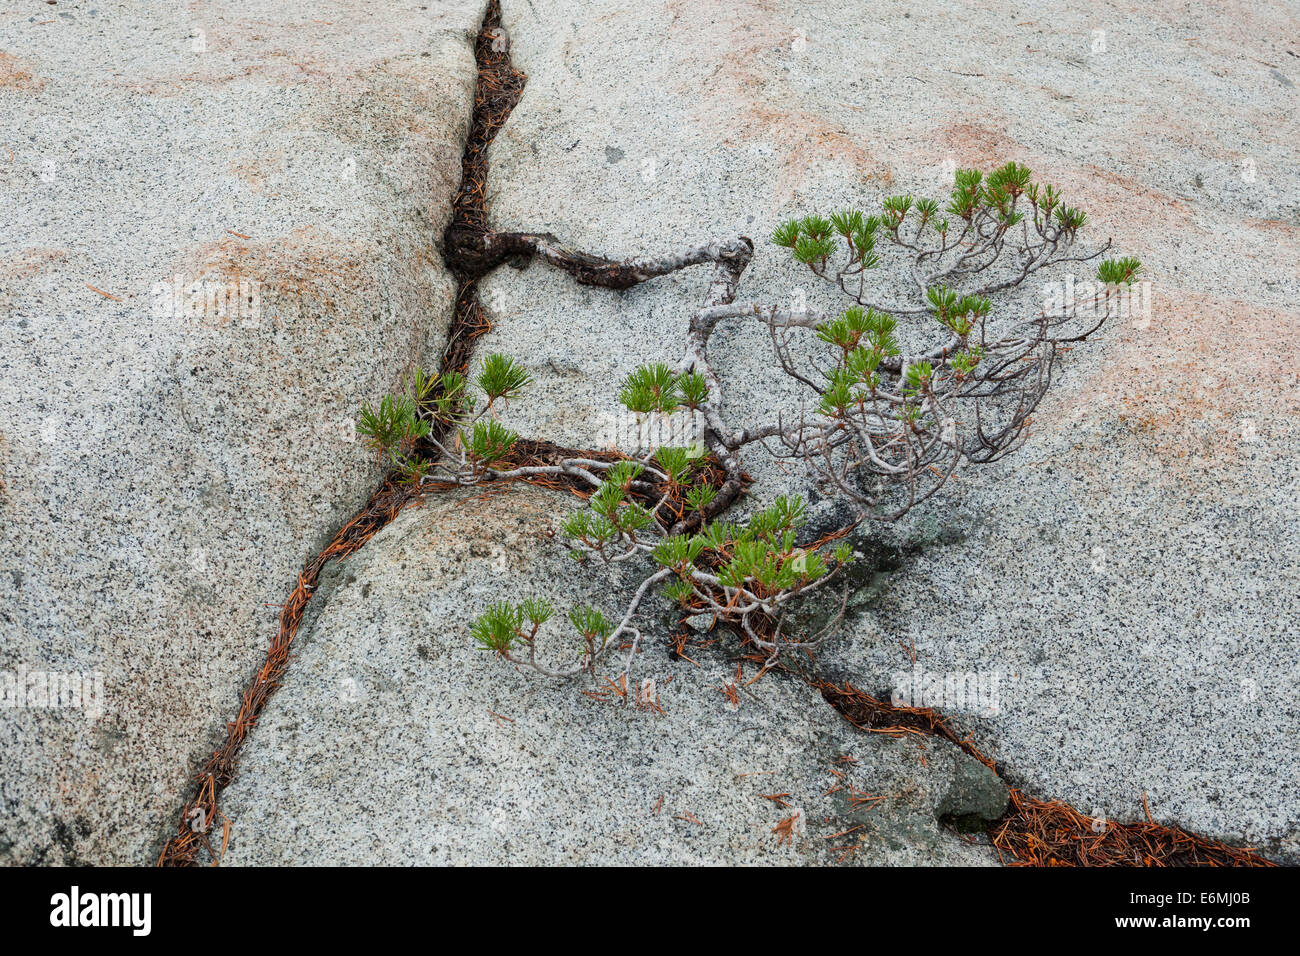 Le jeune pin ponderosa (Pinus ponderosa), qui pousse dans une fissure d'un rocher, dans la chaîne de montagnes de la Sierra Nevada - Californie Etats-Unis Banque D'Images